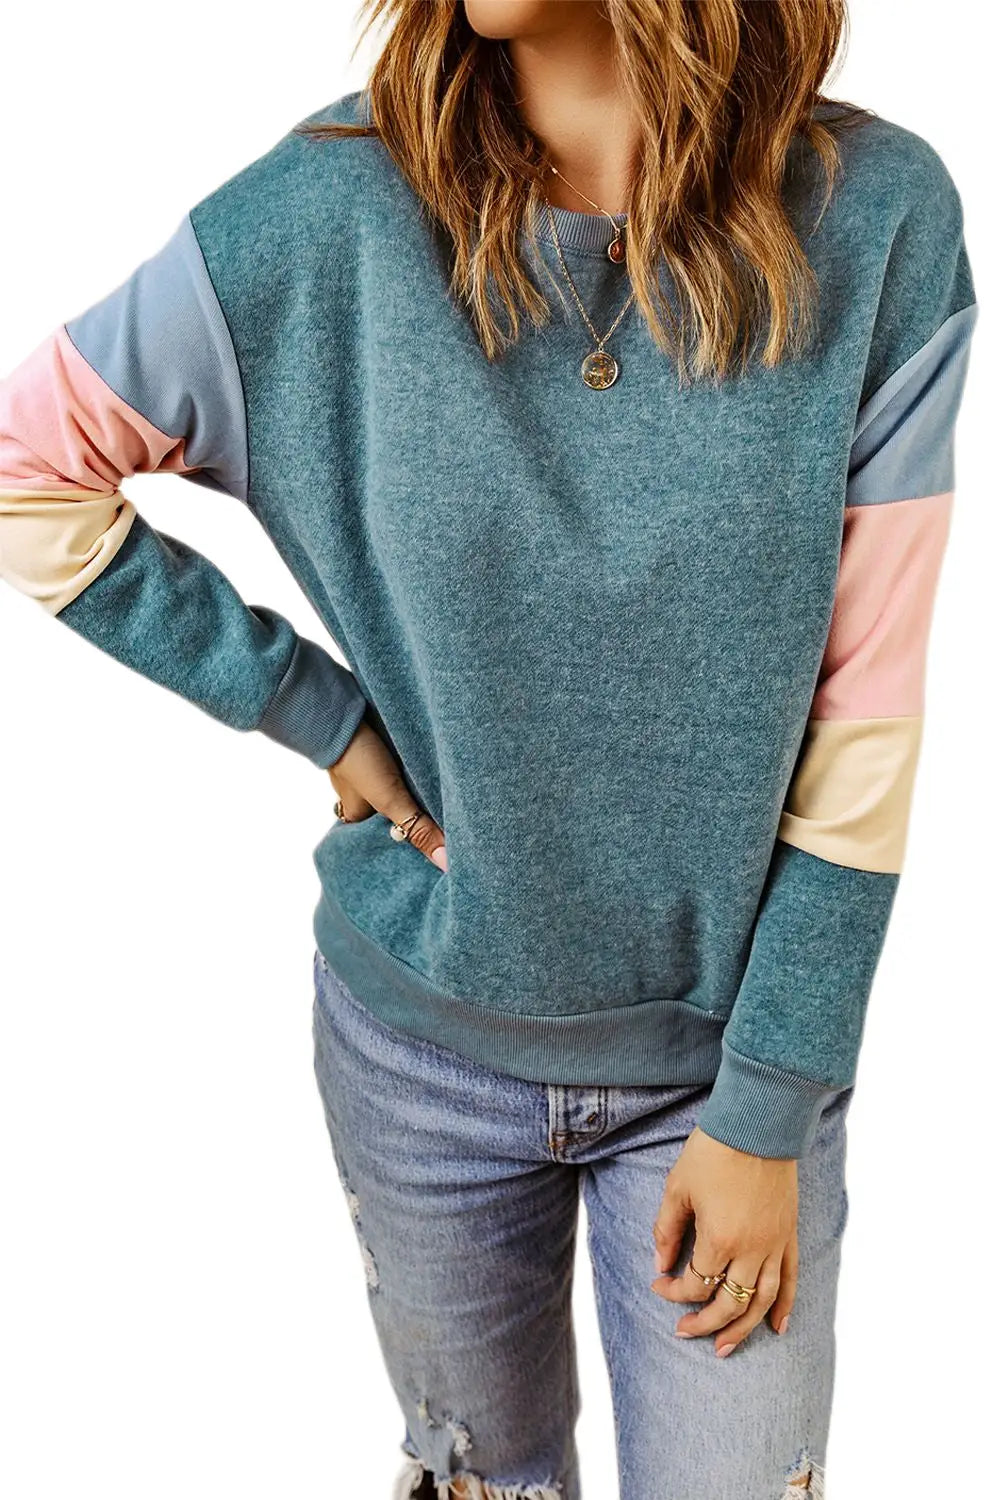 Blue colorblock long sleeve pullover sweatshirt - sweatshirts & hoodies